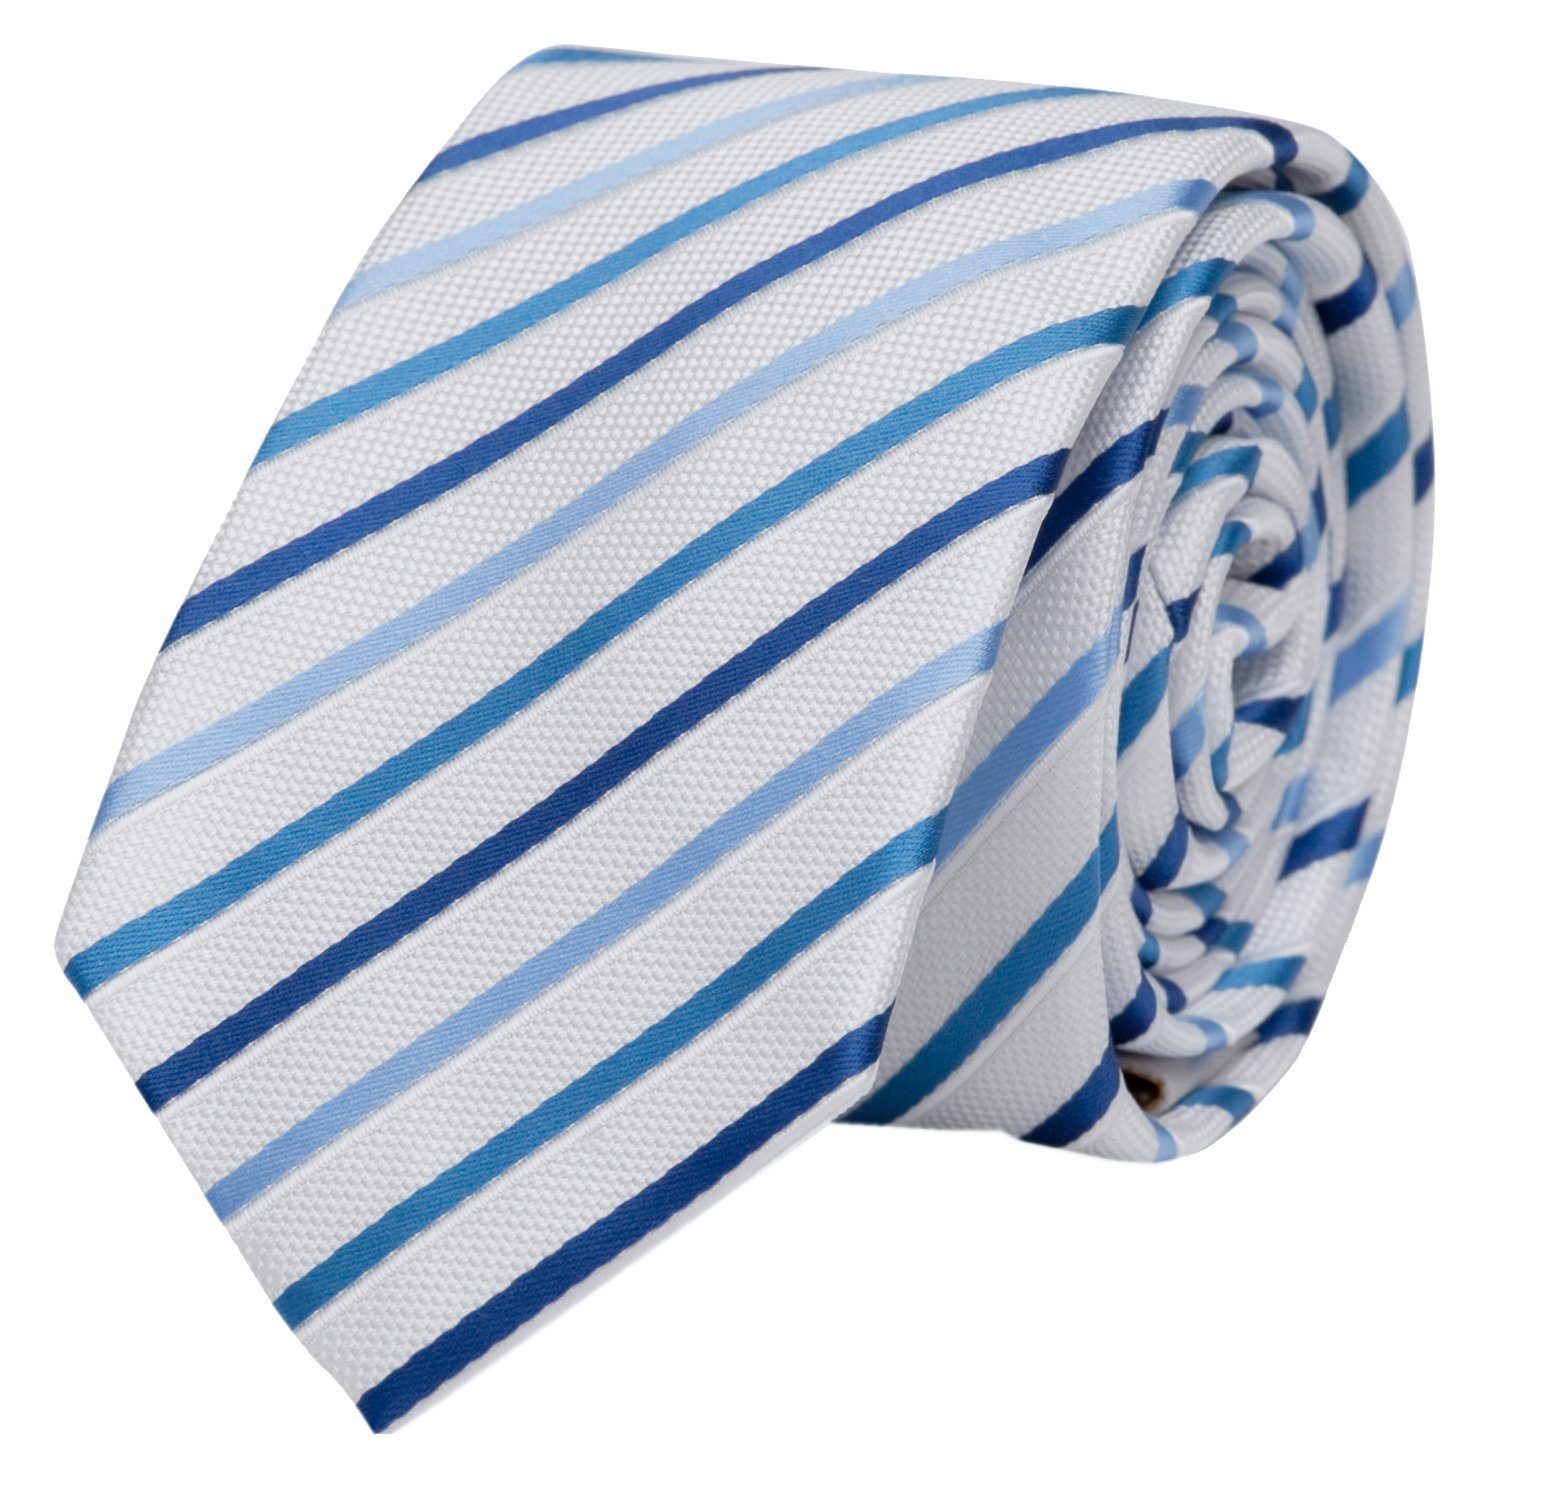 Männer Farini Krawatte Blau Weiß (8cm), - Herren Navy Weiß Blue/True Krawatte in Schlips - Fabio Weiße Moon Breit 8cm Man/Cambridge (Gestreift) verschiedene